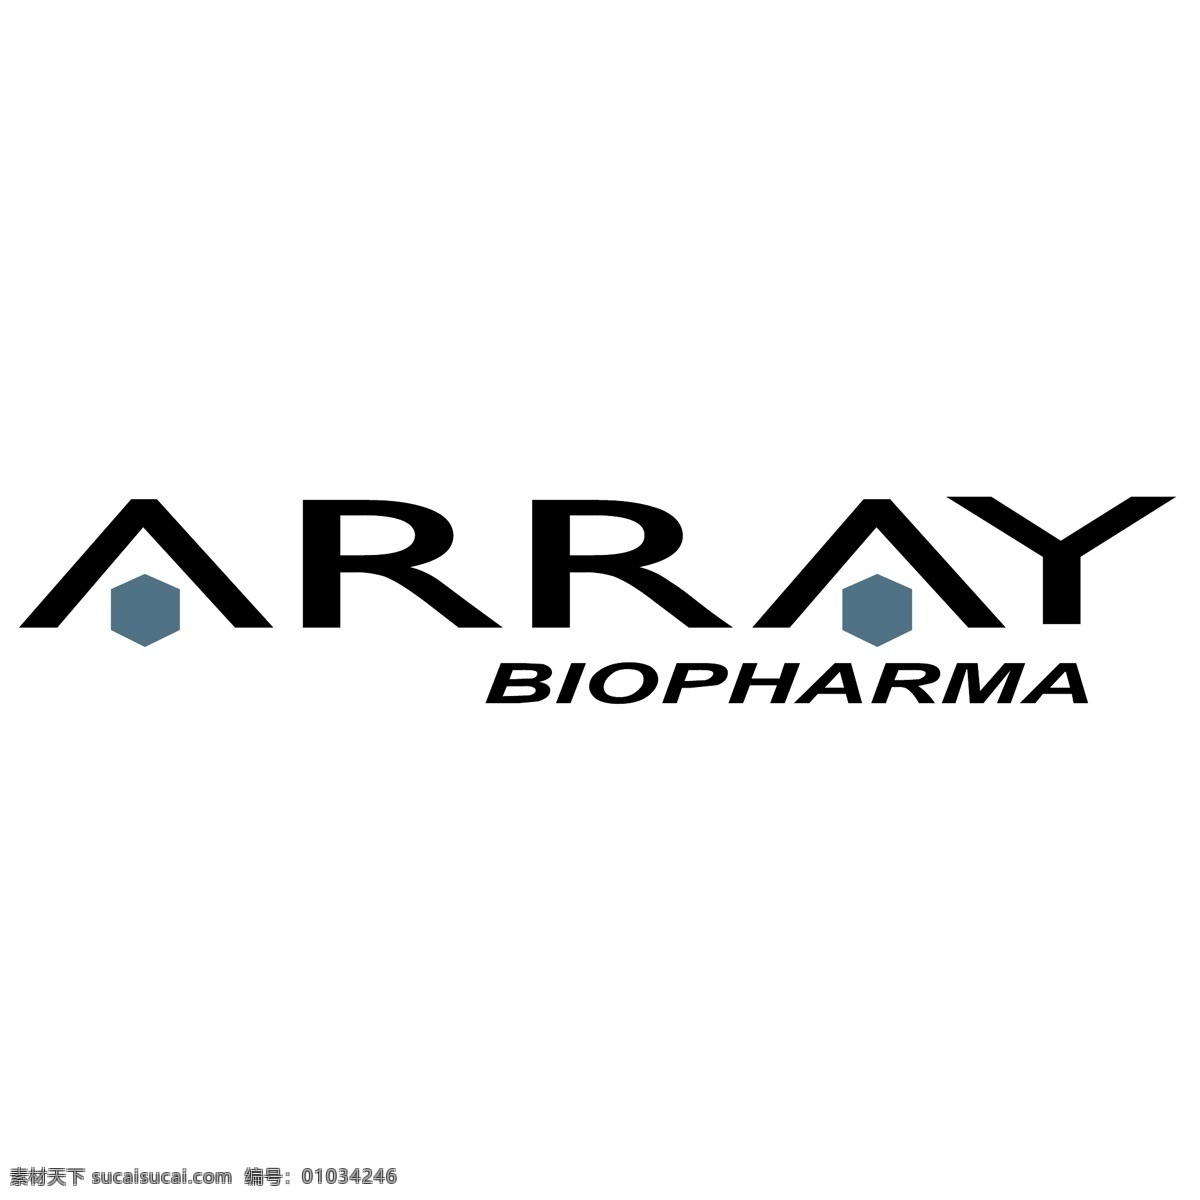 array 生物制药 标识 公司 免费 品牌 品牌标识 商标 矢量标志下载 免费矢量标识 矢量 psd源文件 logo设计